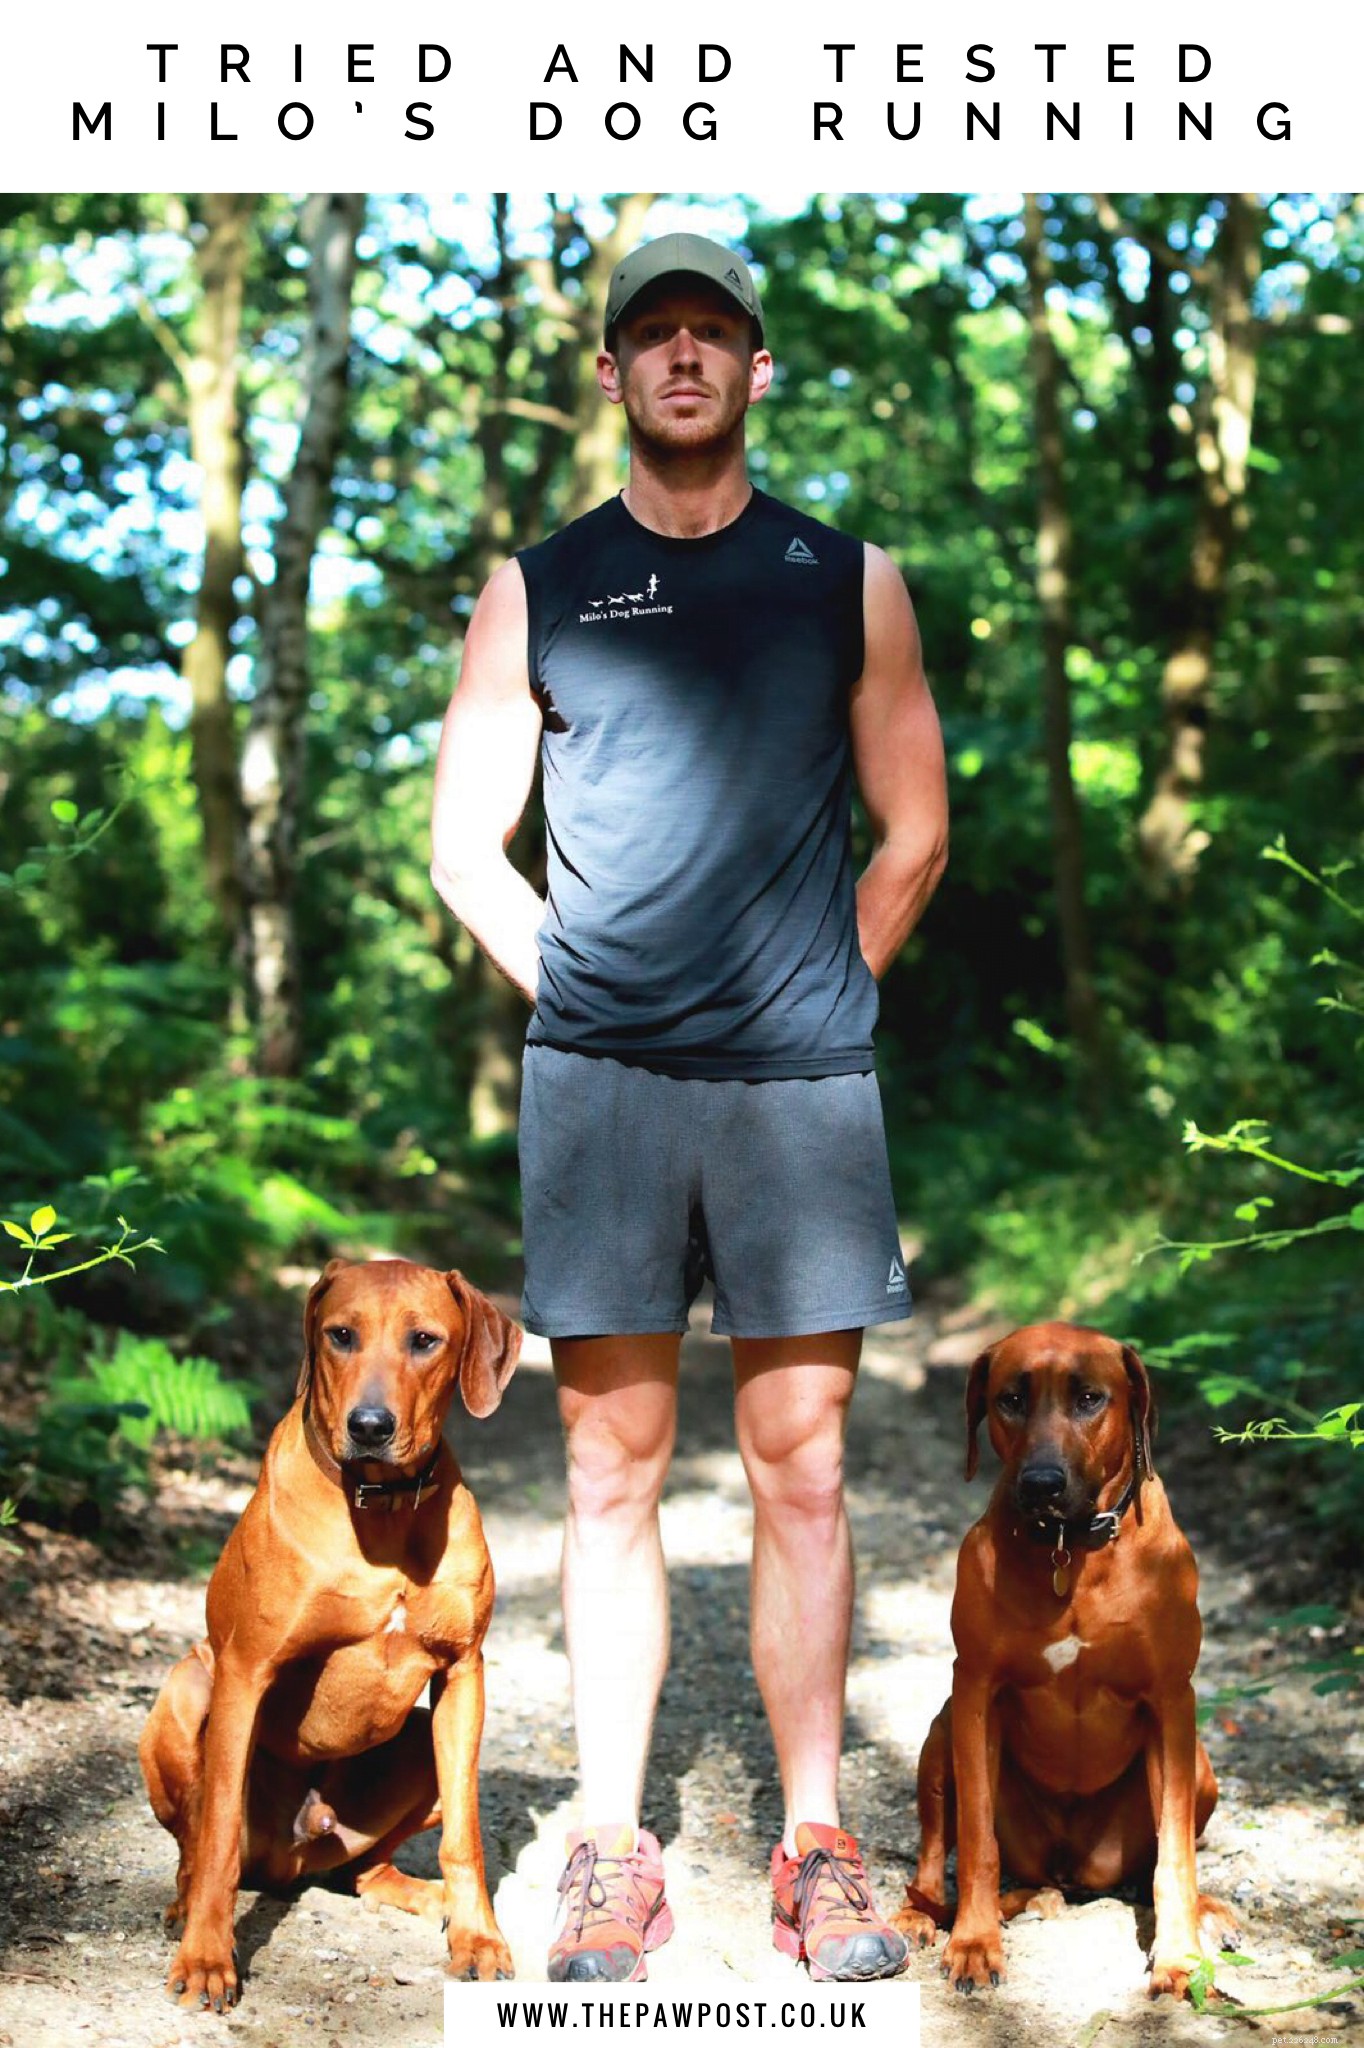 Майло Ройдс рассказывает, как его любовь к бегу и собакам привела его к работе мечты!